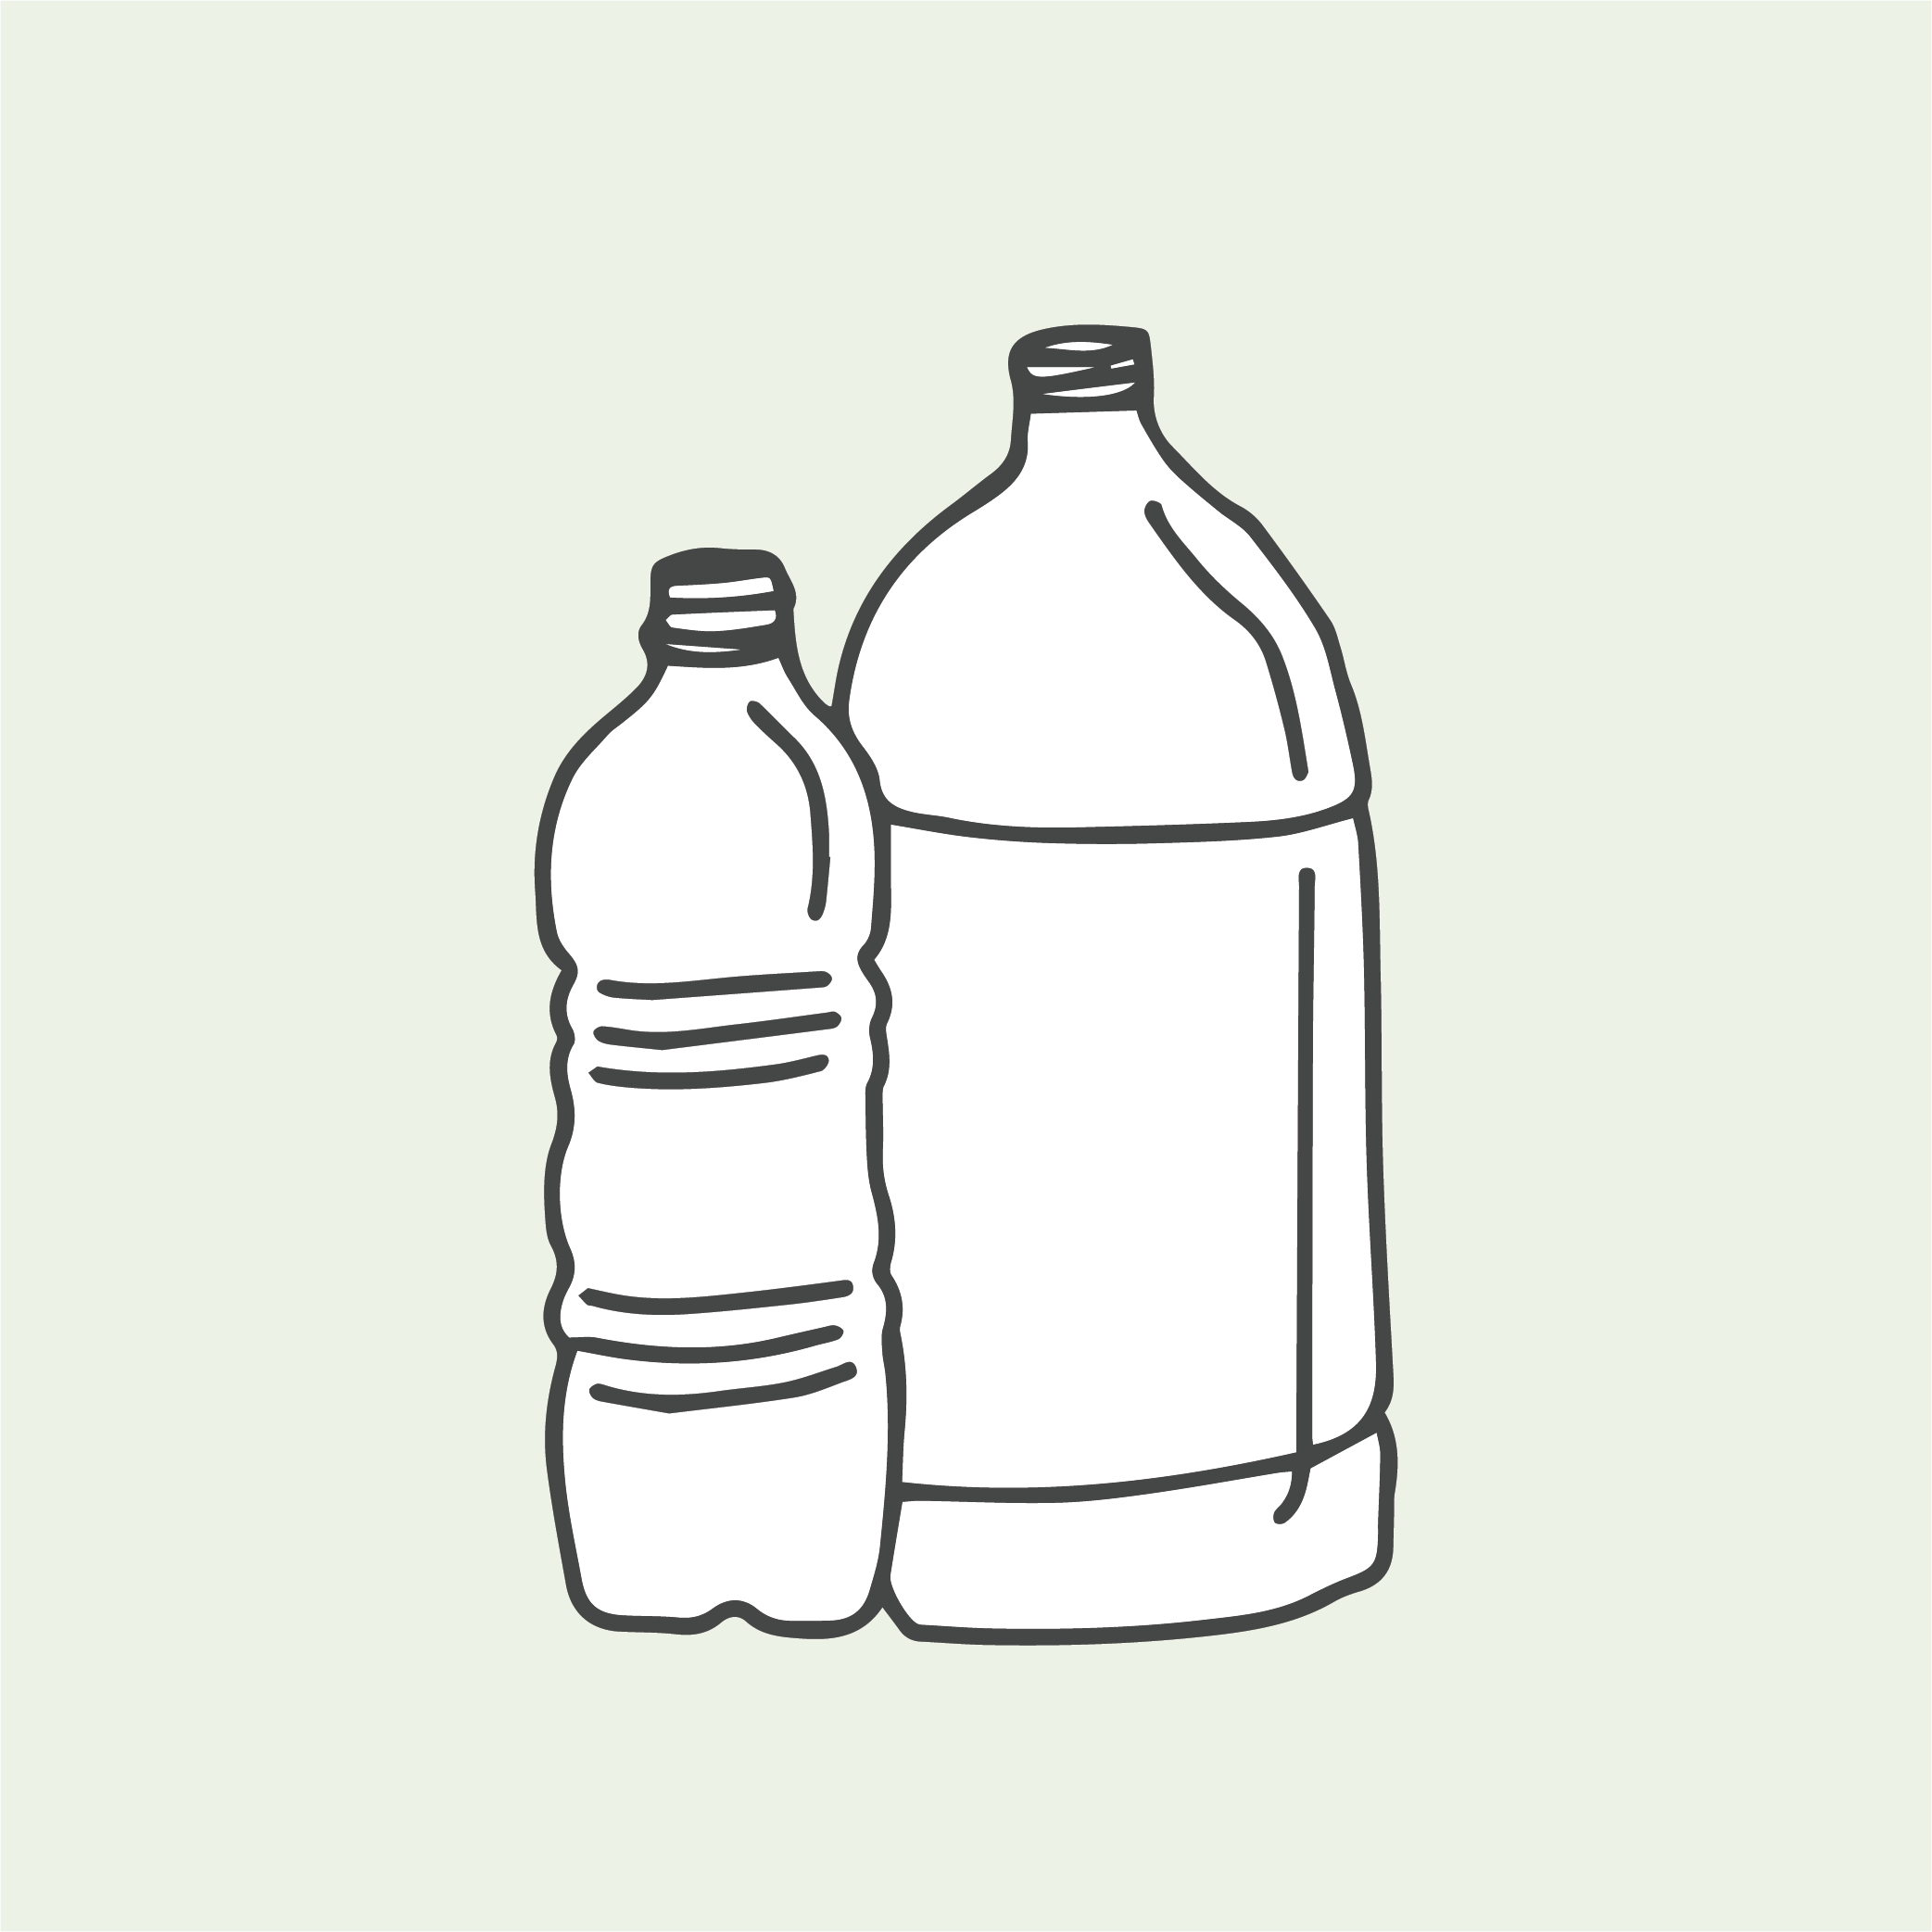 Illustration of plastic bottles